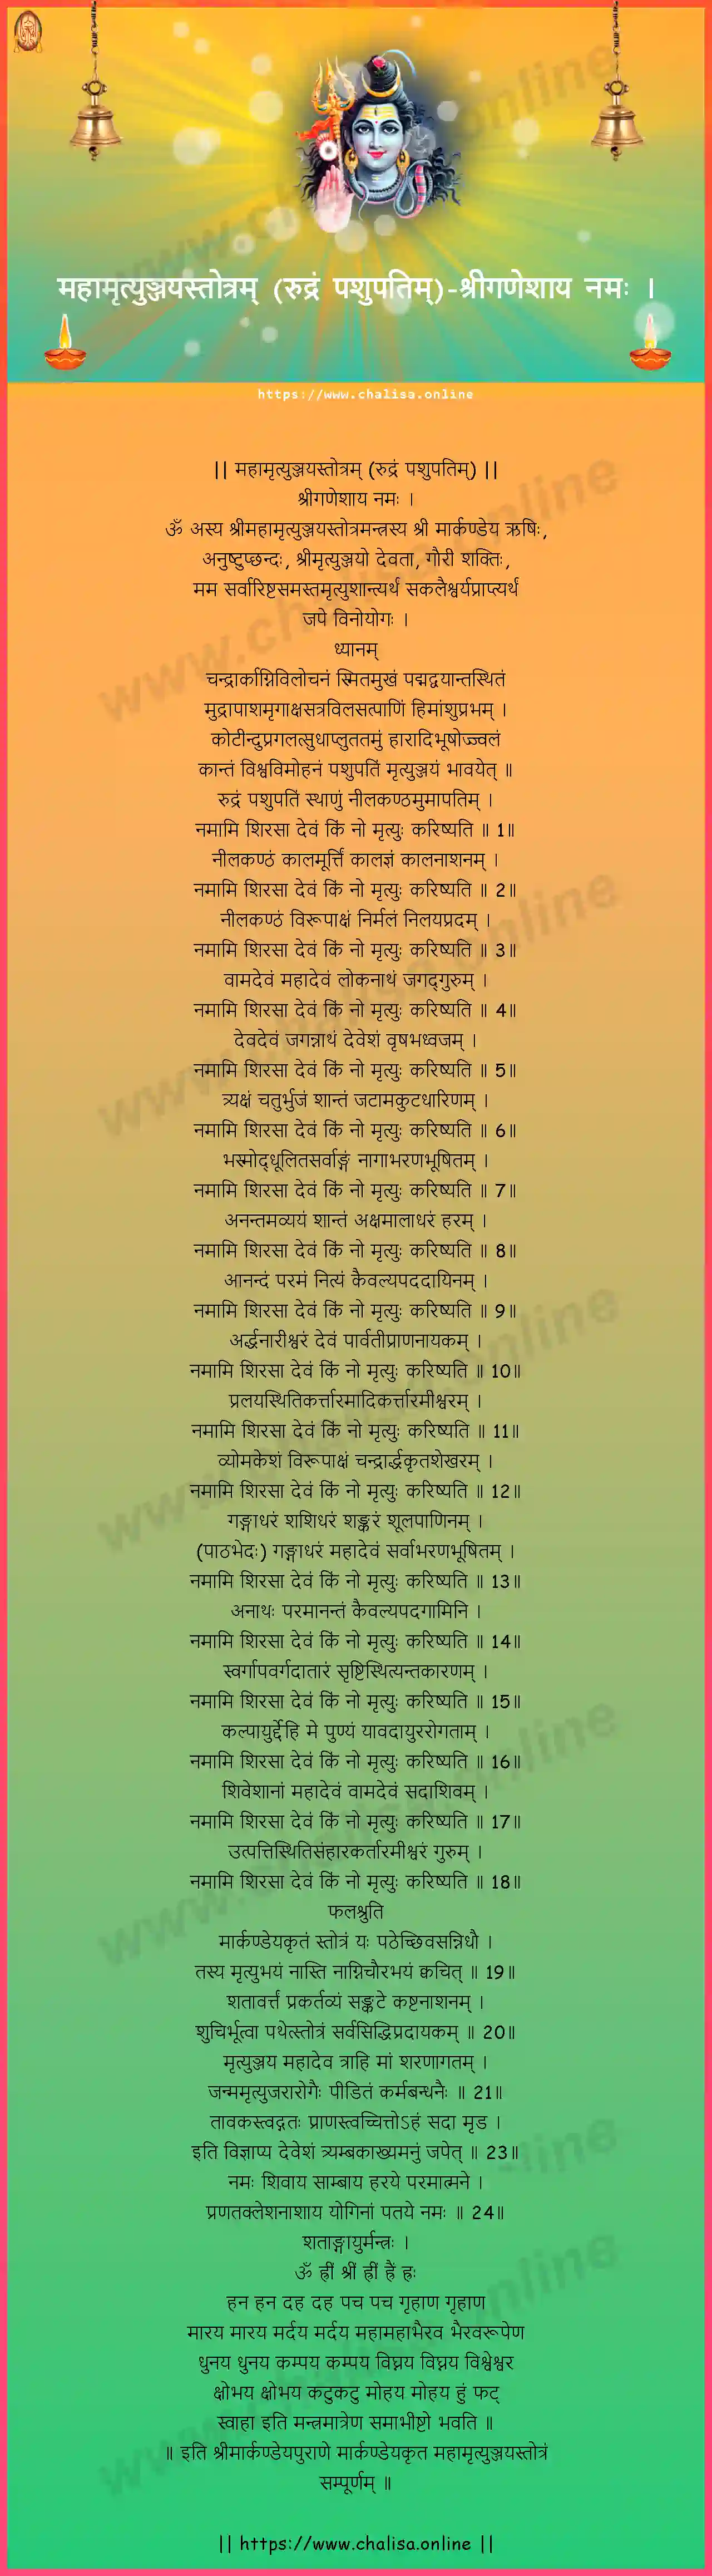 sriganesaya-namah-maha-mrutyunjaya-stotram-rudram-pasupatim-sanskrit-sanskrit-lyrics-download